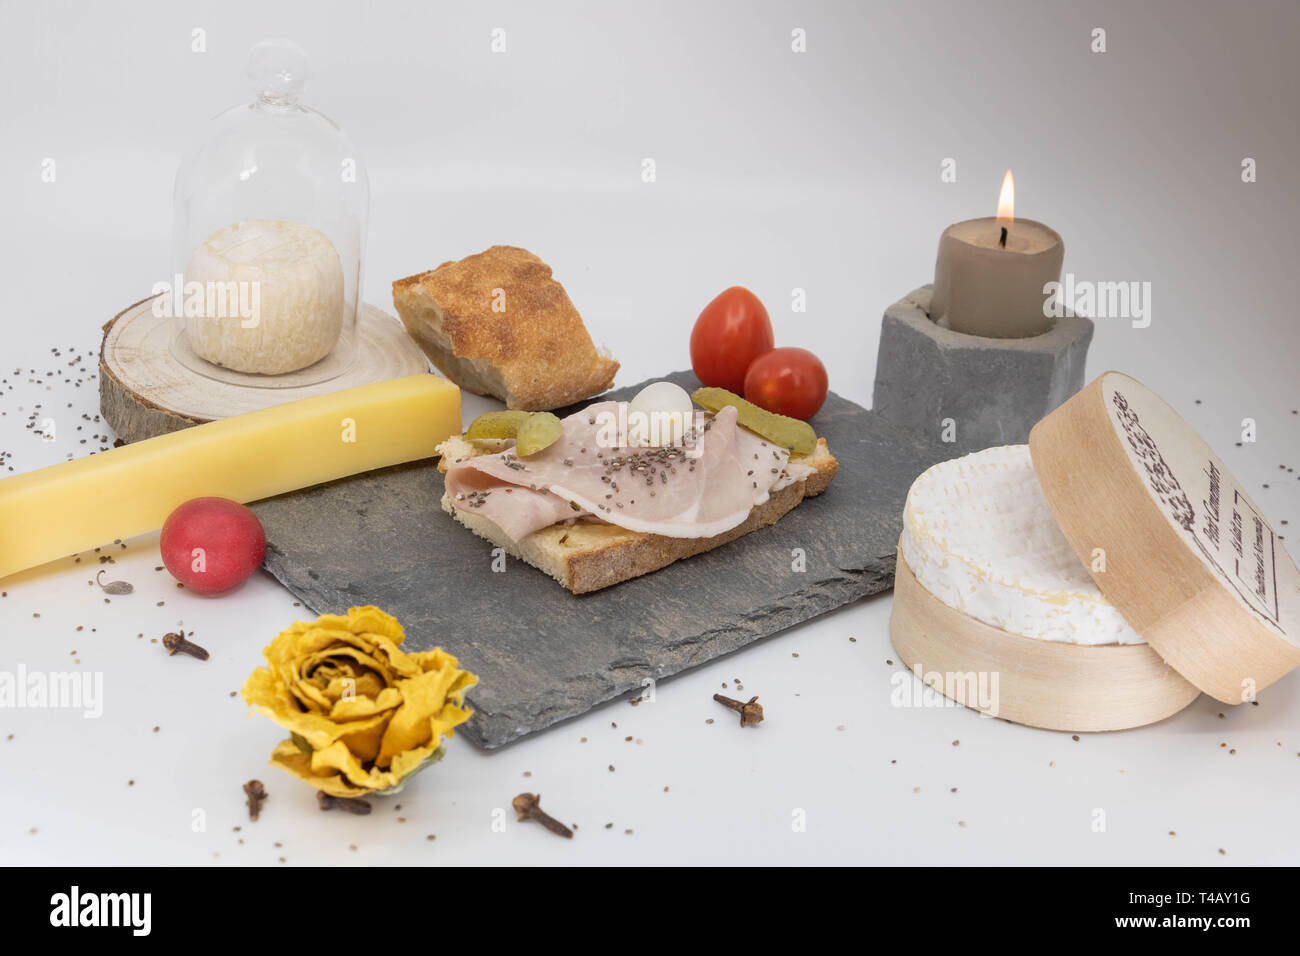 Repas romantique, plats raffinés, dîner aux chandelles, Apéritif et assiette de fromages Banque D'Images